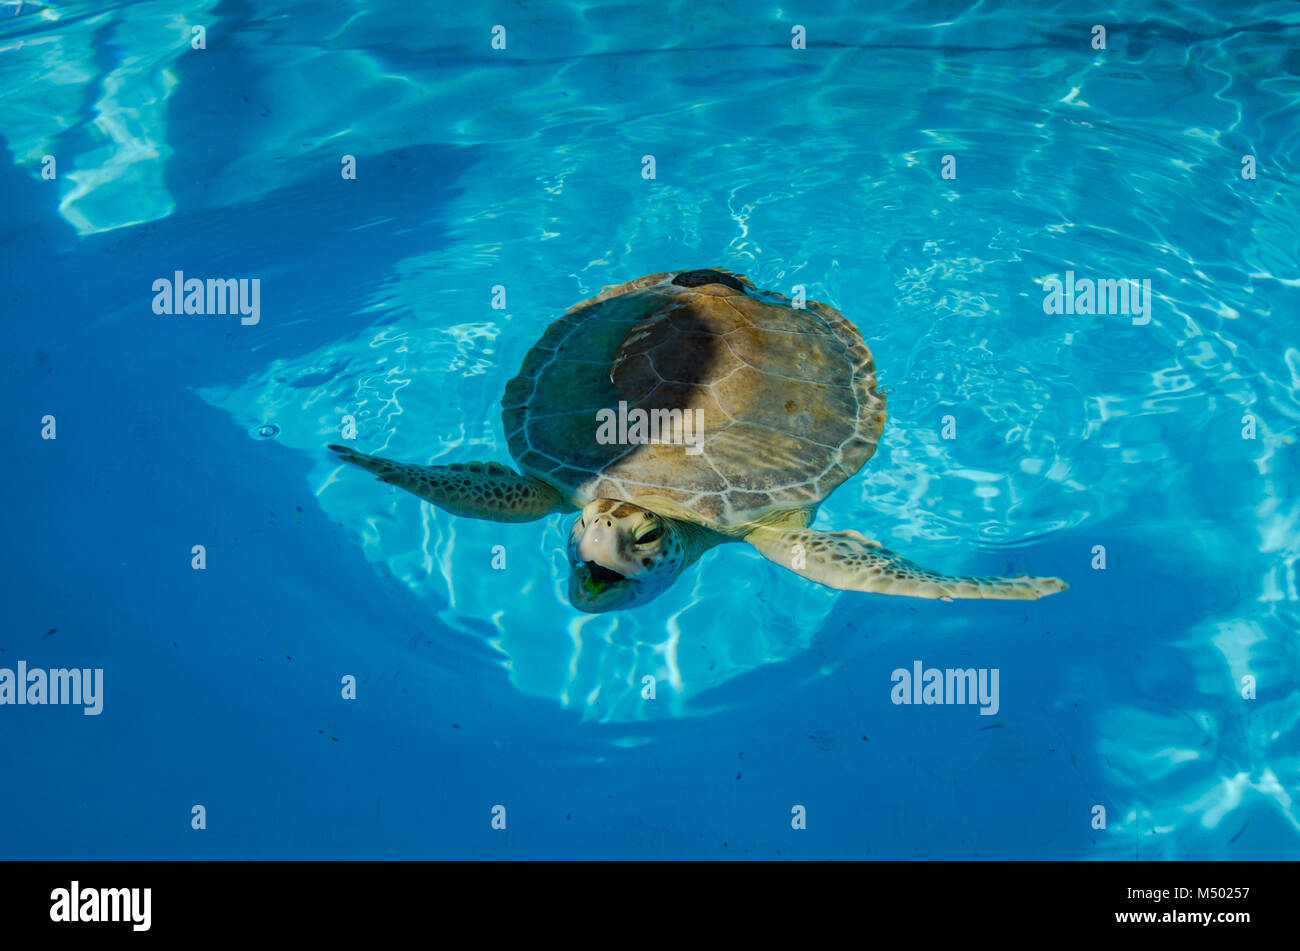 Per la riabilitazione di tartarughe di mare sorrisi a visitatori per la tartaruga ospedale, una piccola organizzazione senza scopo di lucro dedicata alla riabilitazione del mare in pericolo Foto Stock